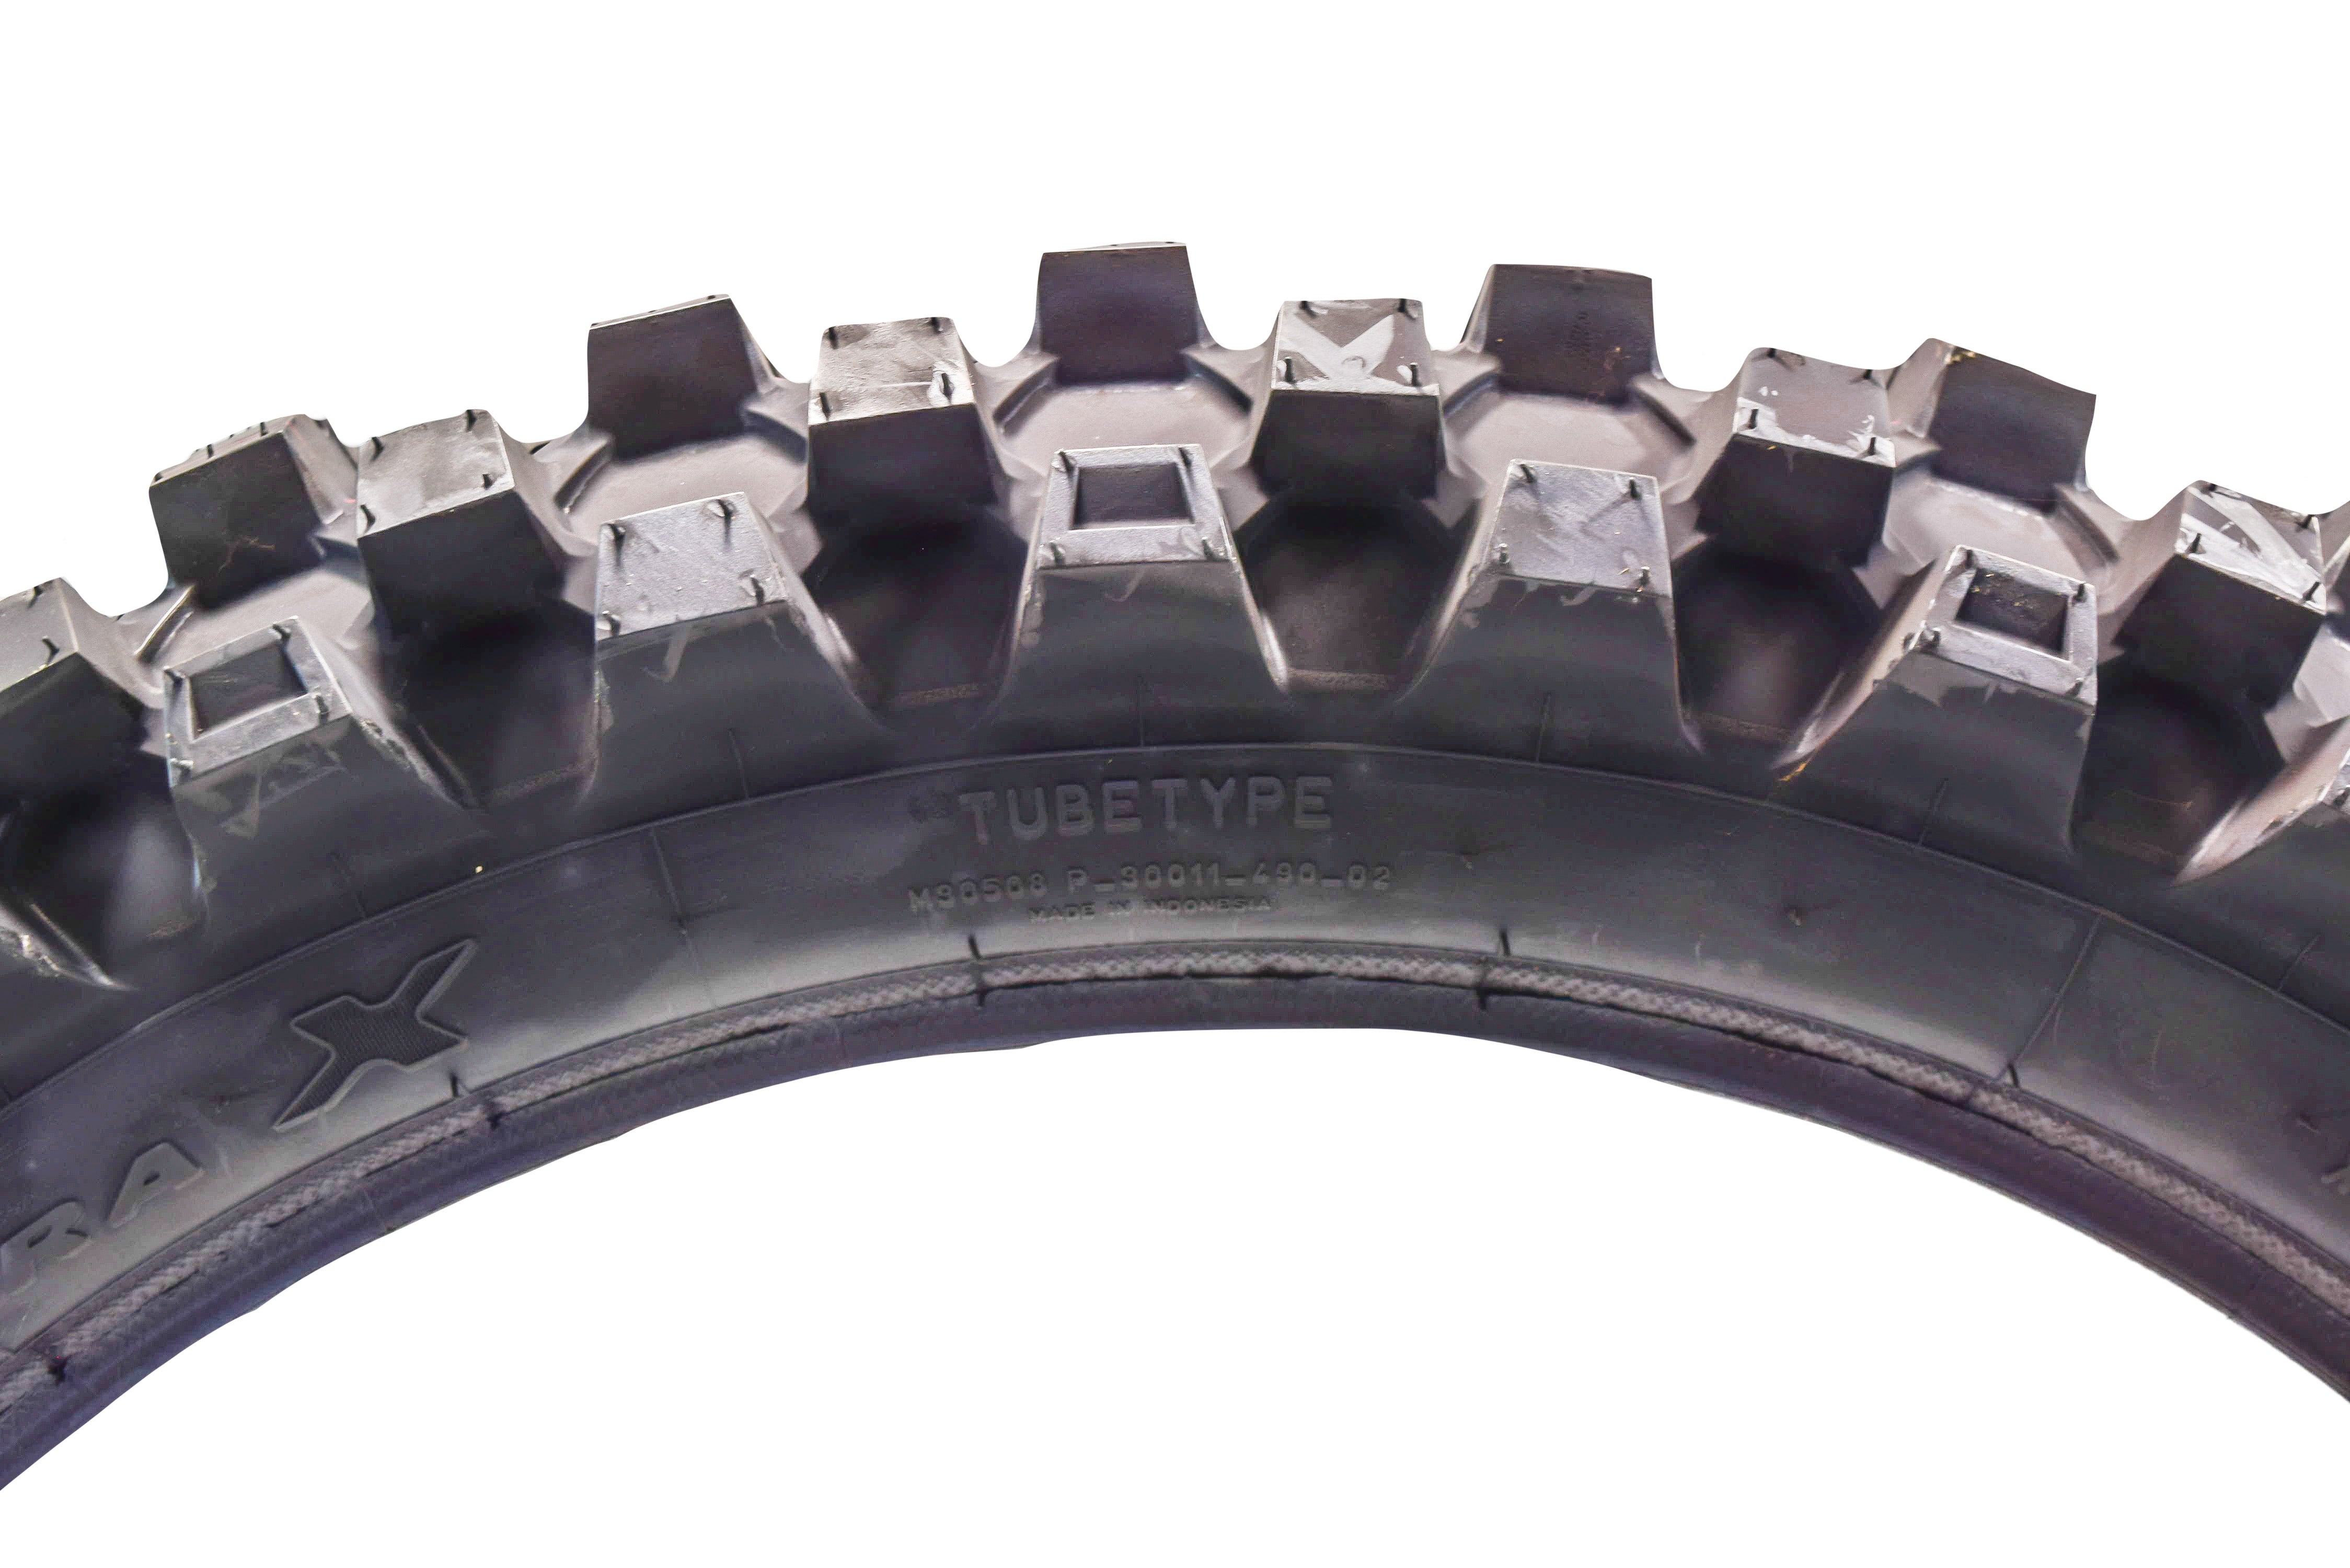 Pirelli Scorpion Extra X 110/90-19 62M Bias Tube Type Tire